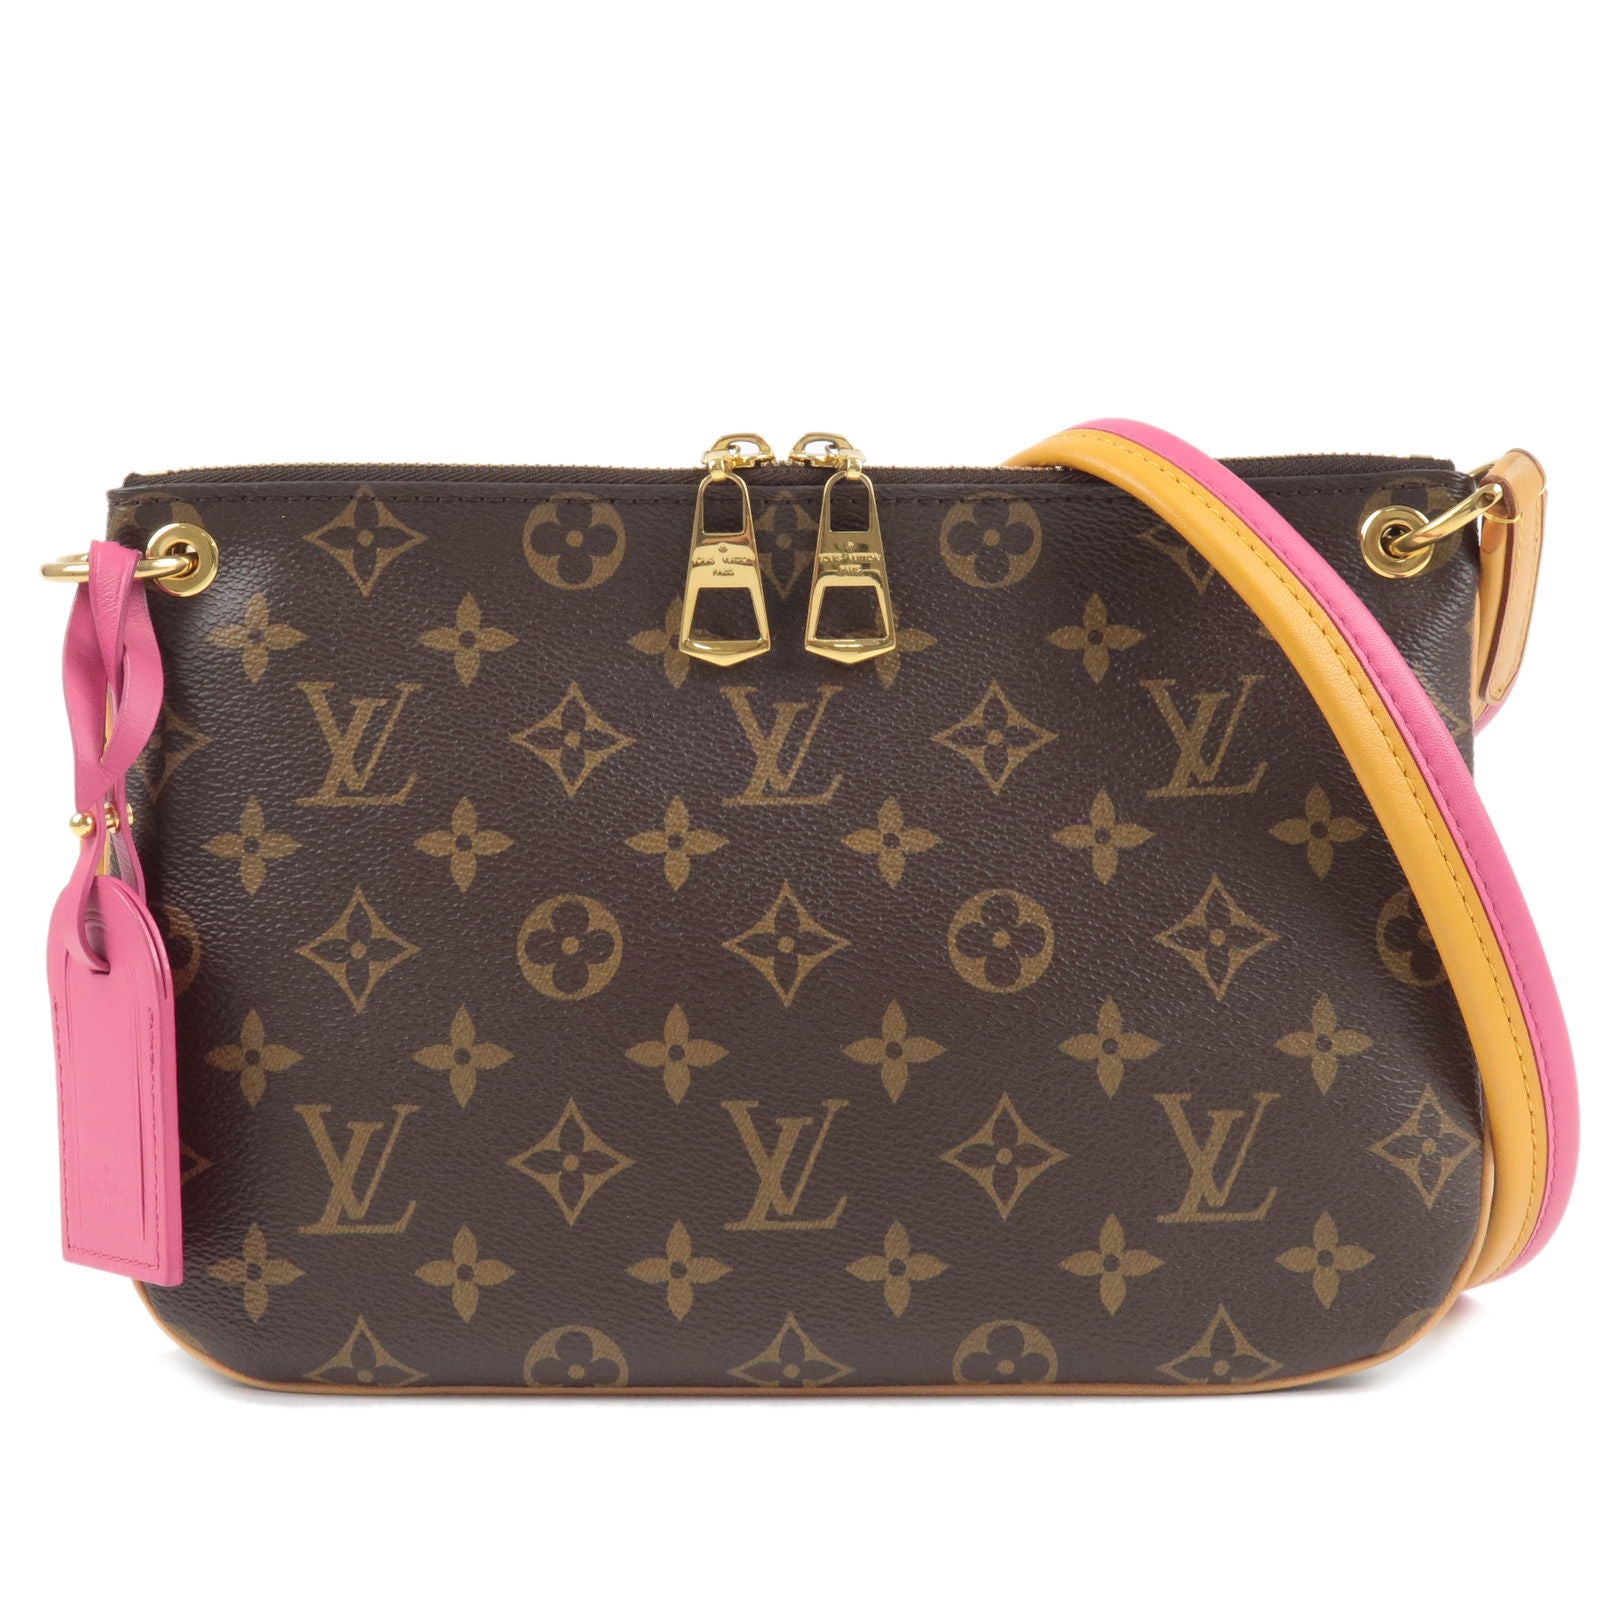 Lorette - Hot - Louis Vuitton Iena PM Damier Azur $1 - M44053 – dct -  Shoulder - Vuitton - Monogram - Bag - Louis - Pink - ep_vintage luxury Store